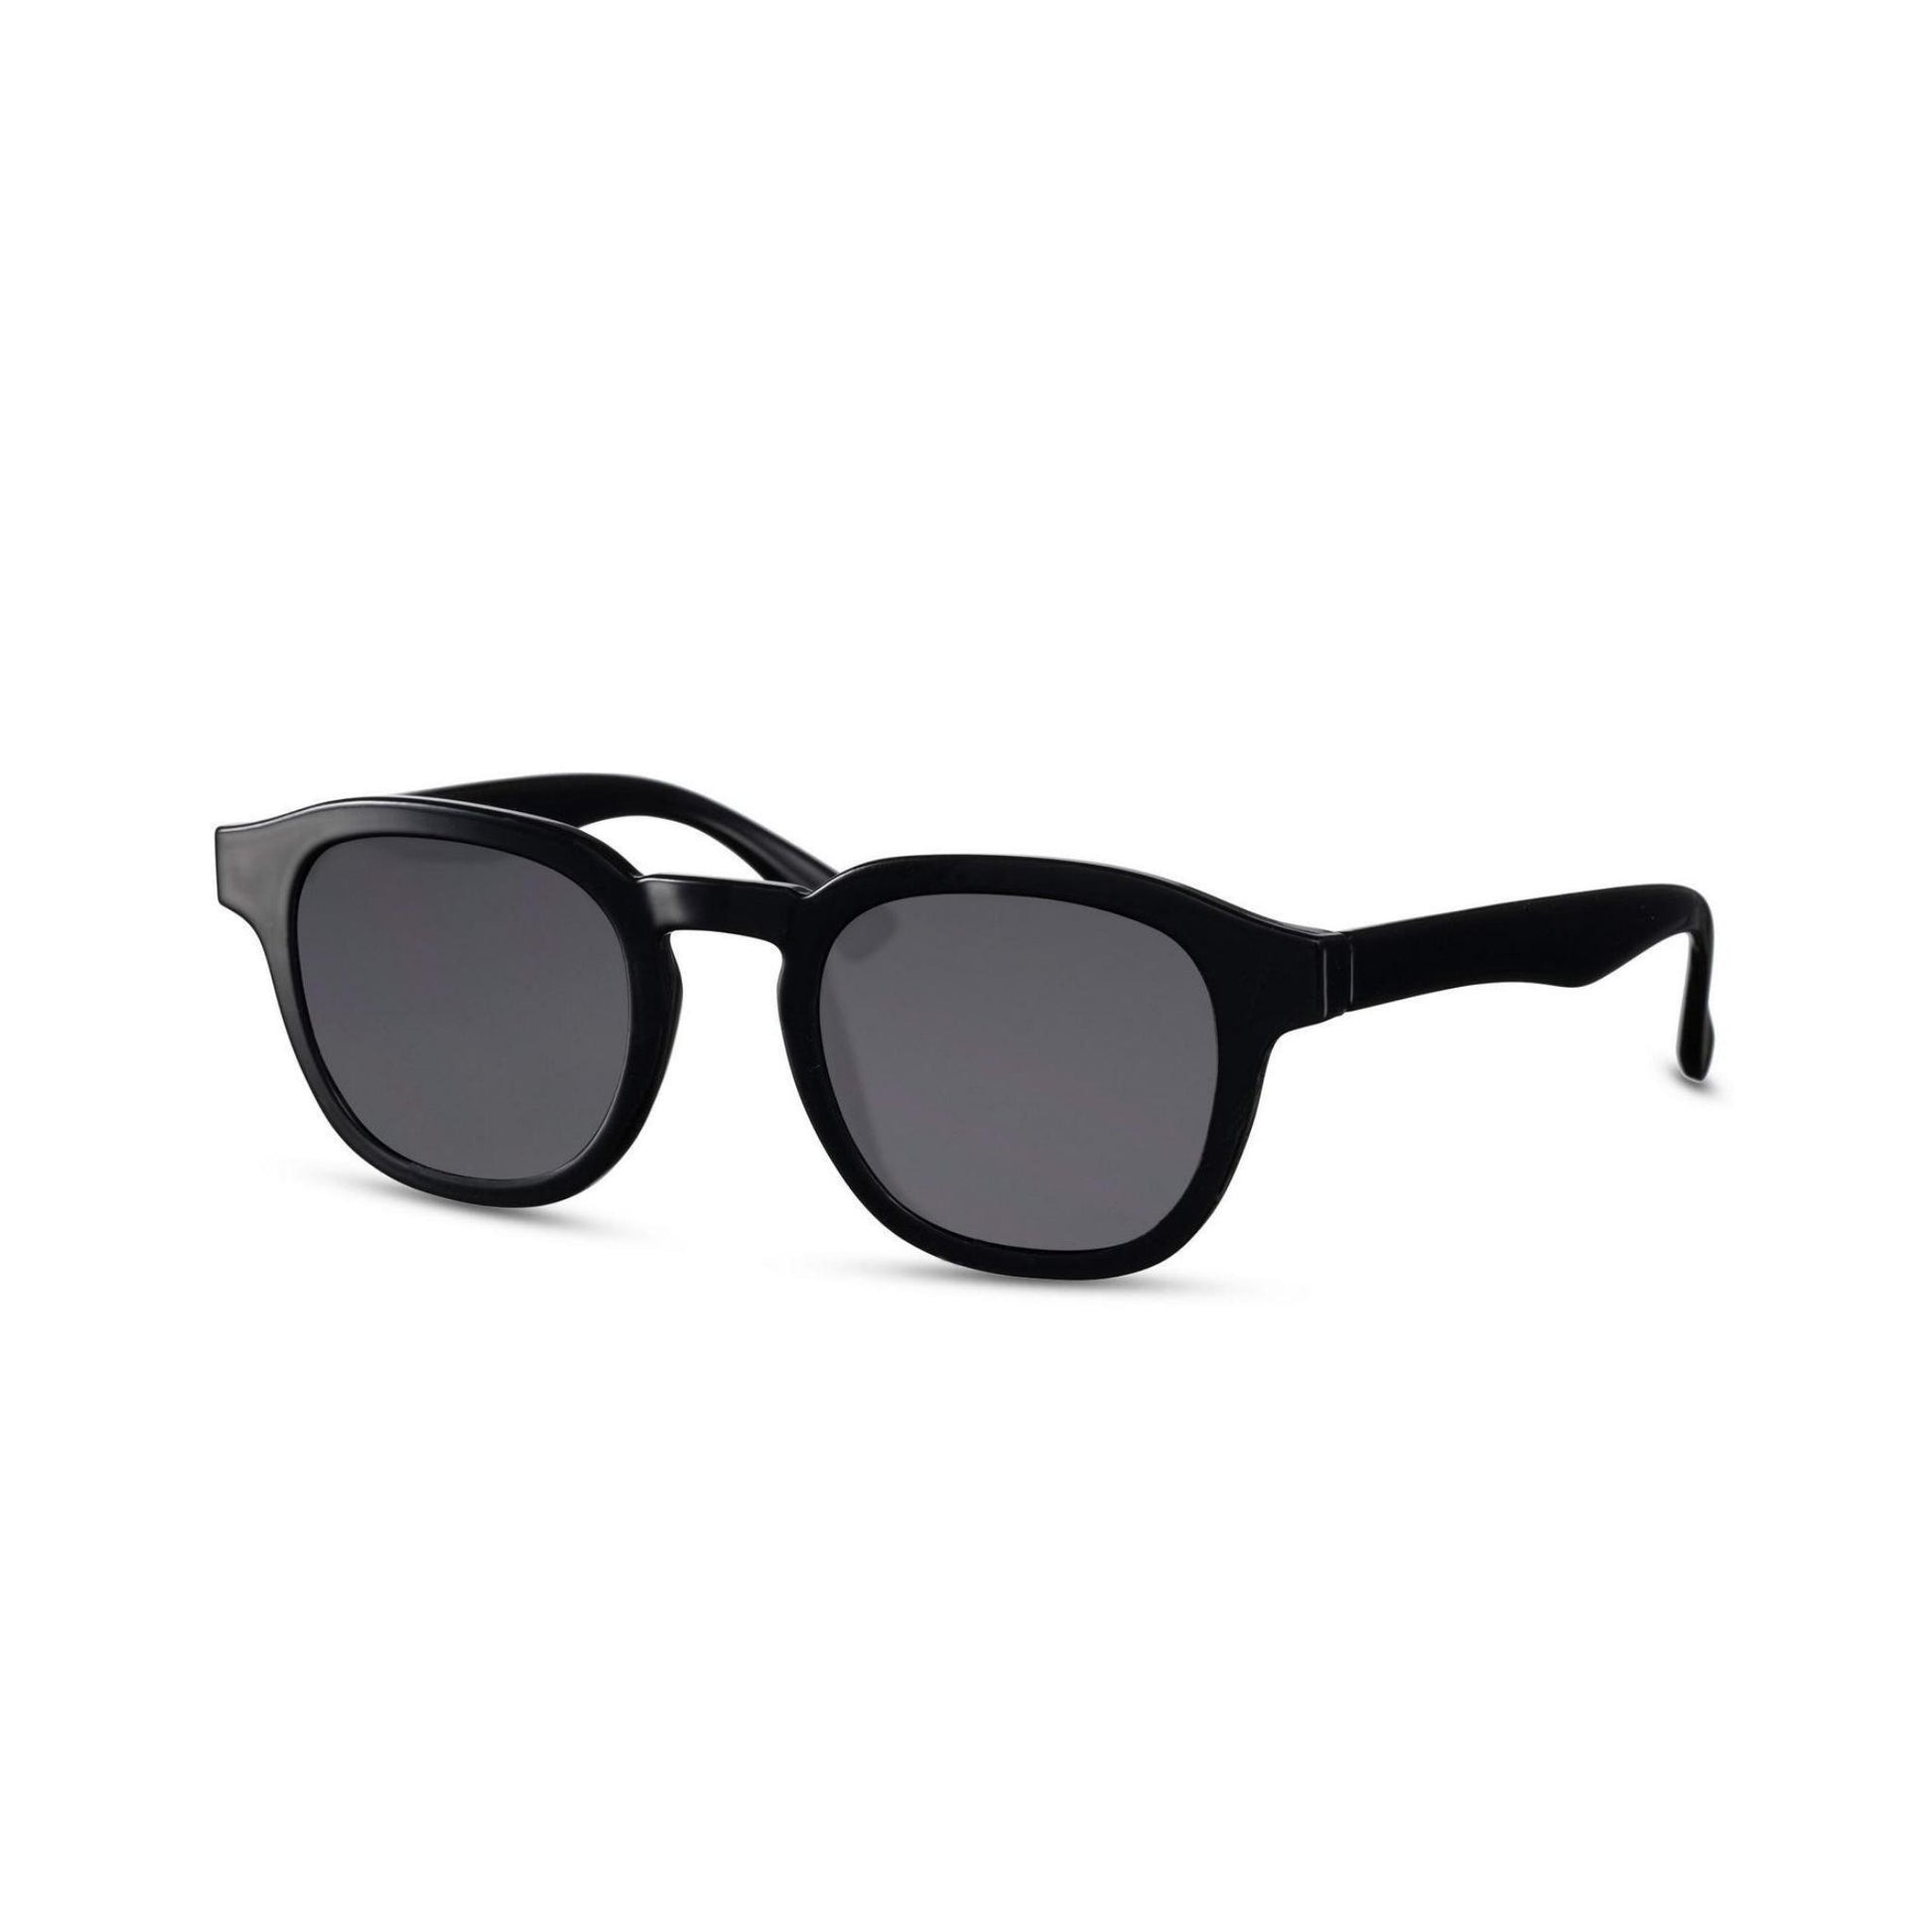 Γυαλιά ηλίου Montreal της Exposure Sunglasses με προστασία UV400 με μαύρο σκελετό και μαύρο φακό.Πλάγια προβολή.